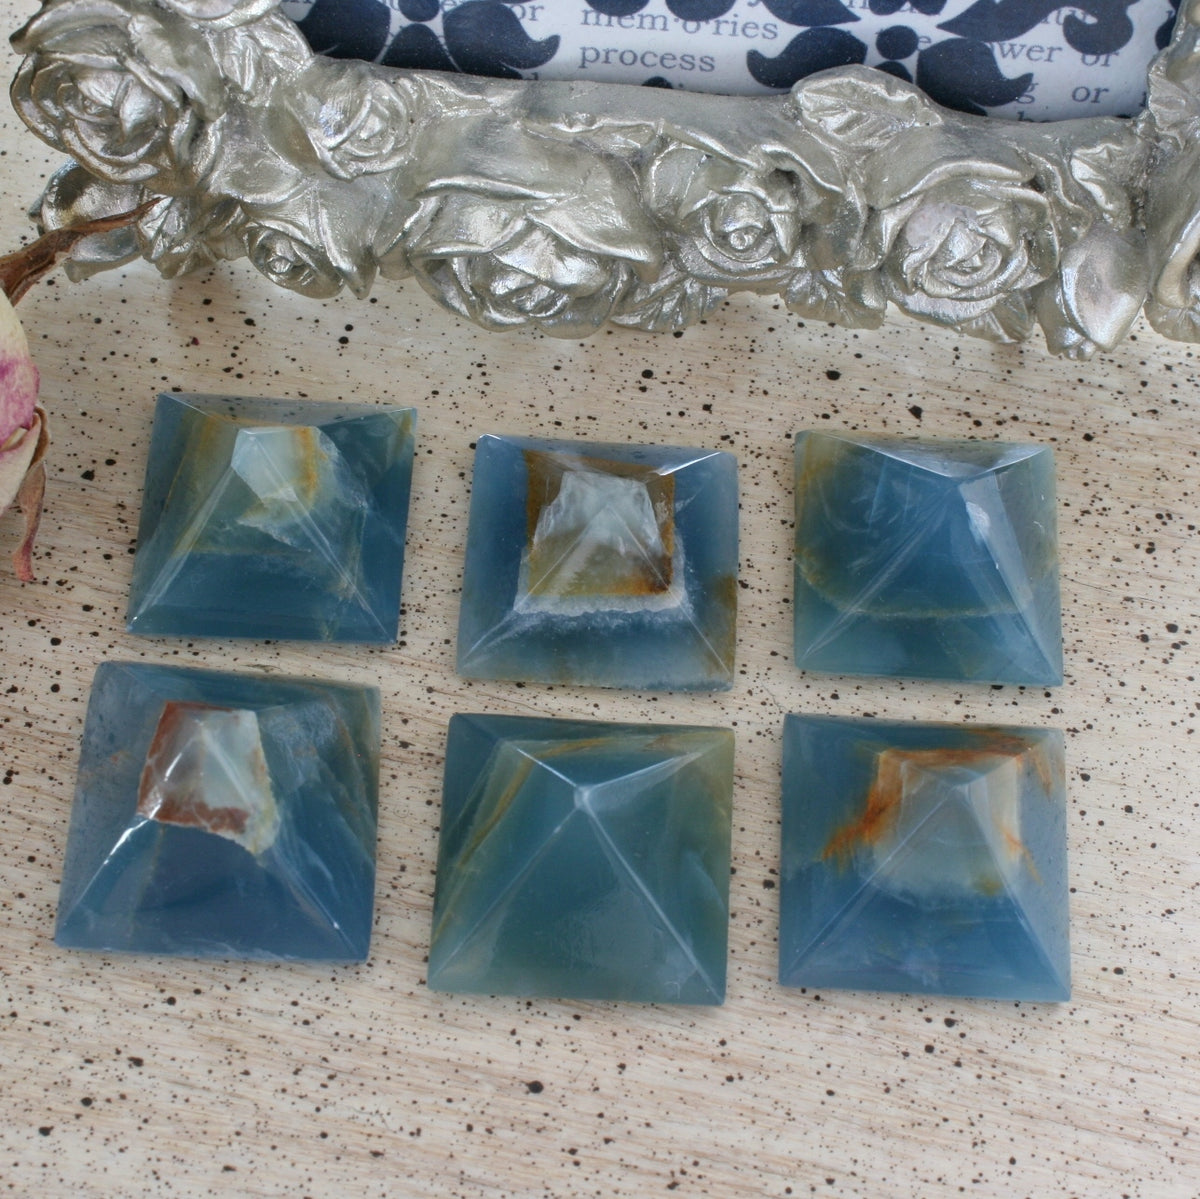 Blue Calcite / Blue Onyx Pyramid from Argentina, also called Lemurian Aquatine Calcite, LGPY5